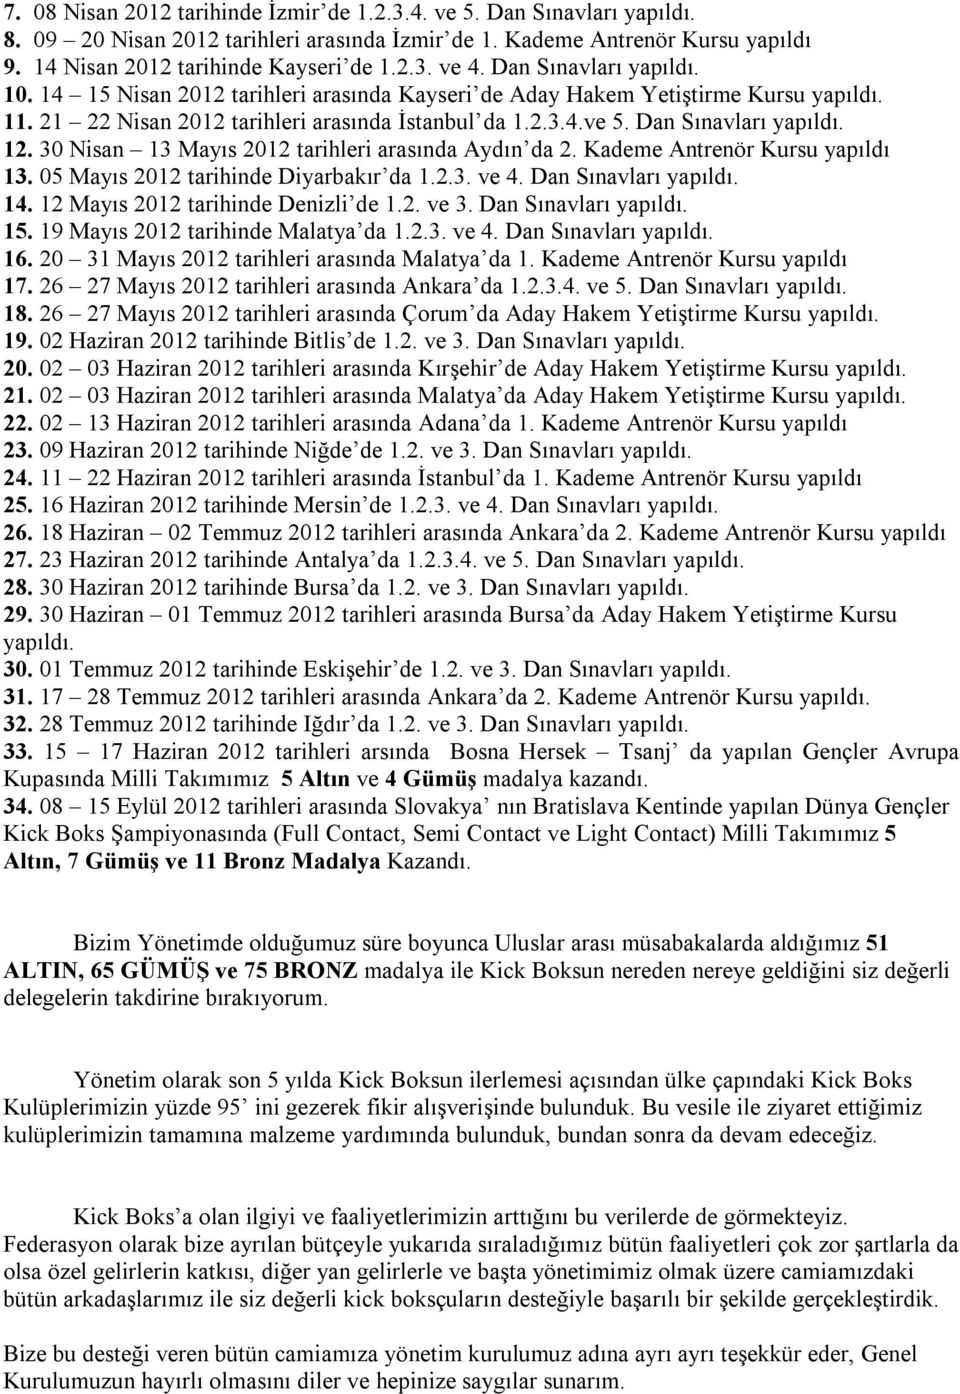 12. 30 Nisan 13 Mayıs 2012 tarihleri arasında Aydın da 2. Kademe Antrenör Kursu yapıldı 13. 05 Mayıs 2012 tarihinde Diyarbakır da 1.2.3. ve 4. Dan Sınavları yapıldı. 14.